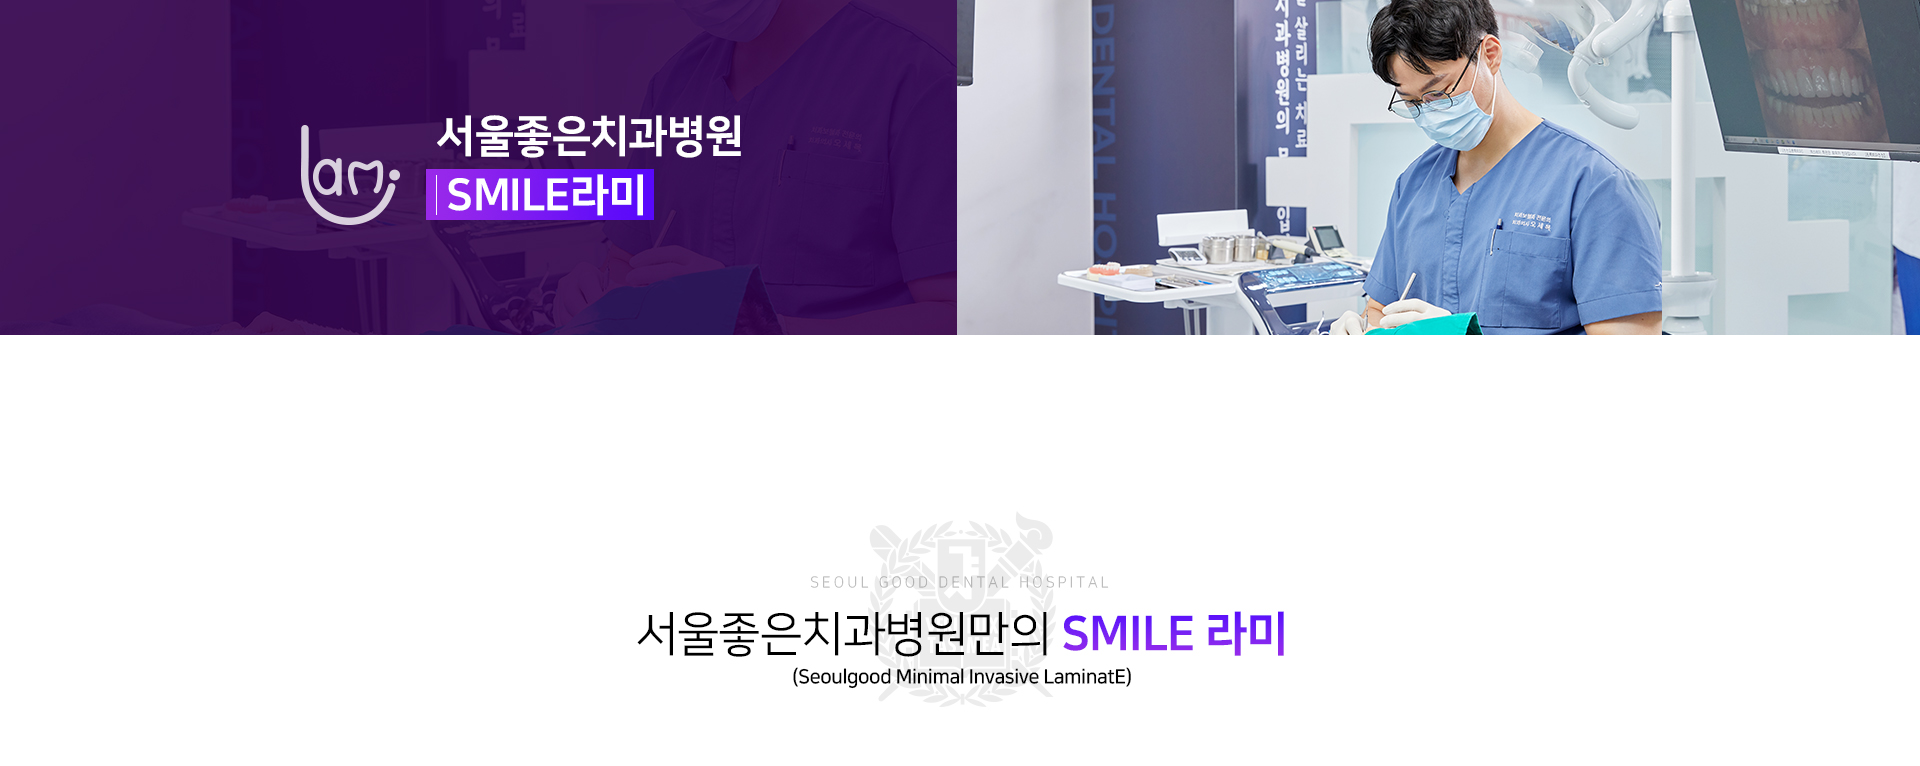 서울좋은치과병원-SMILE라미-특별함